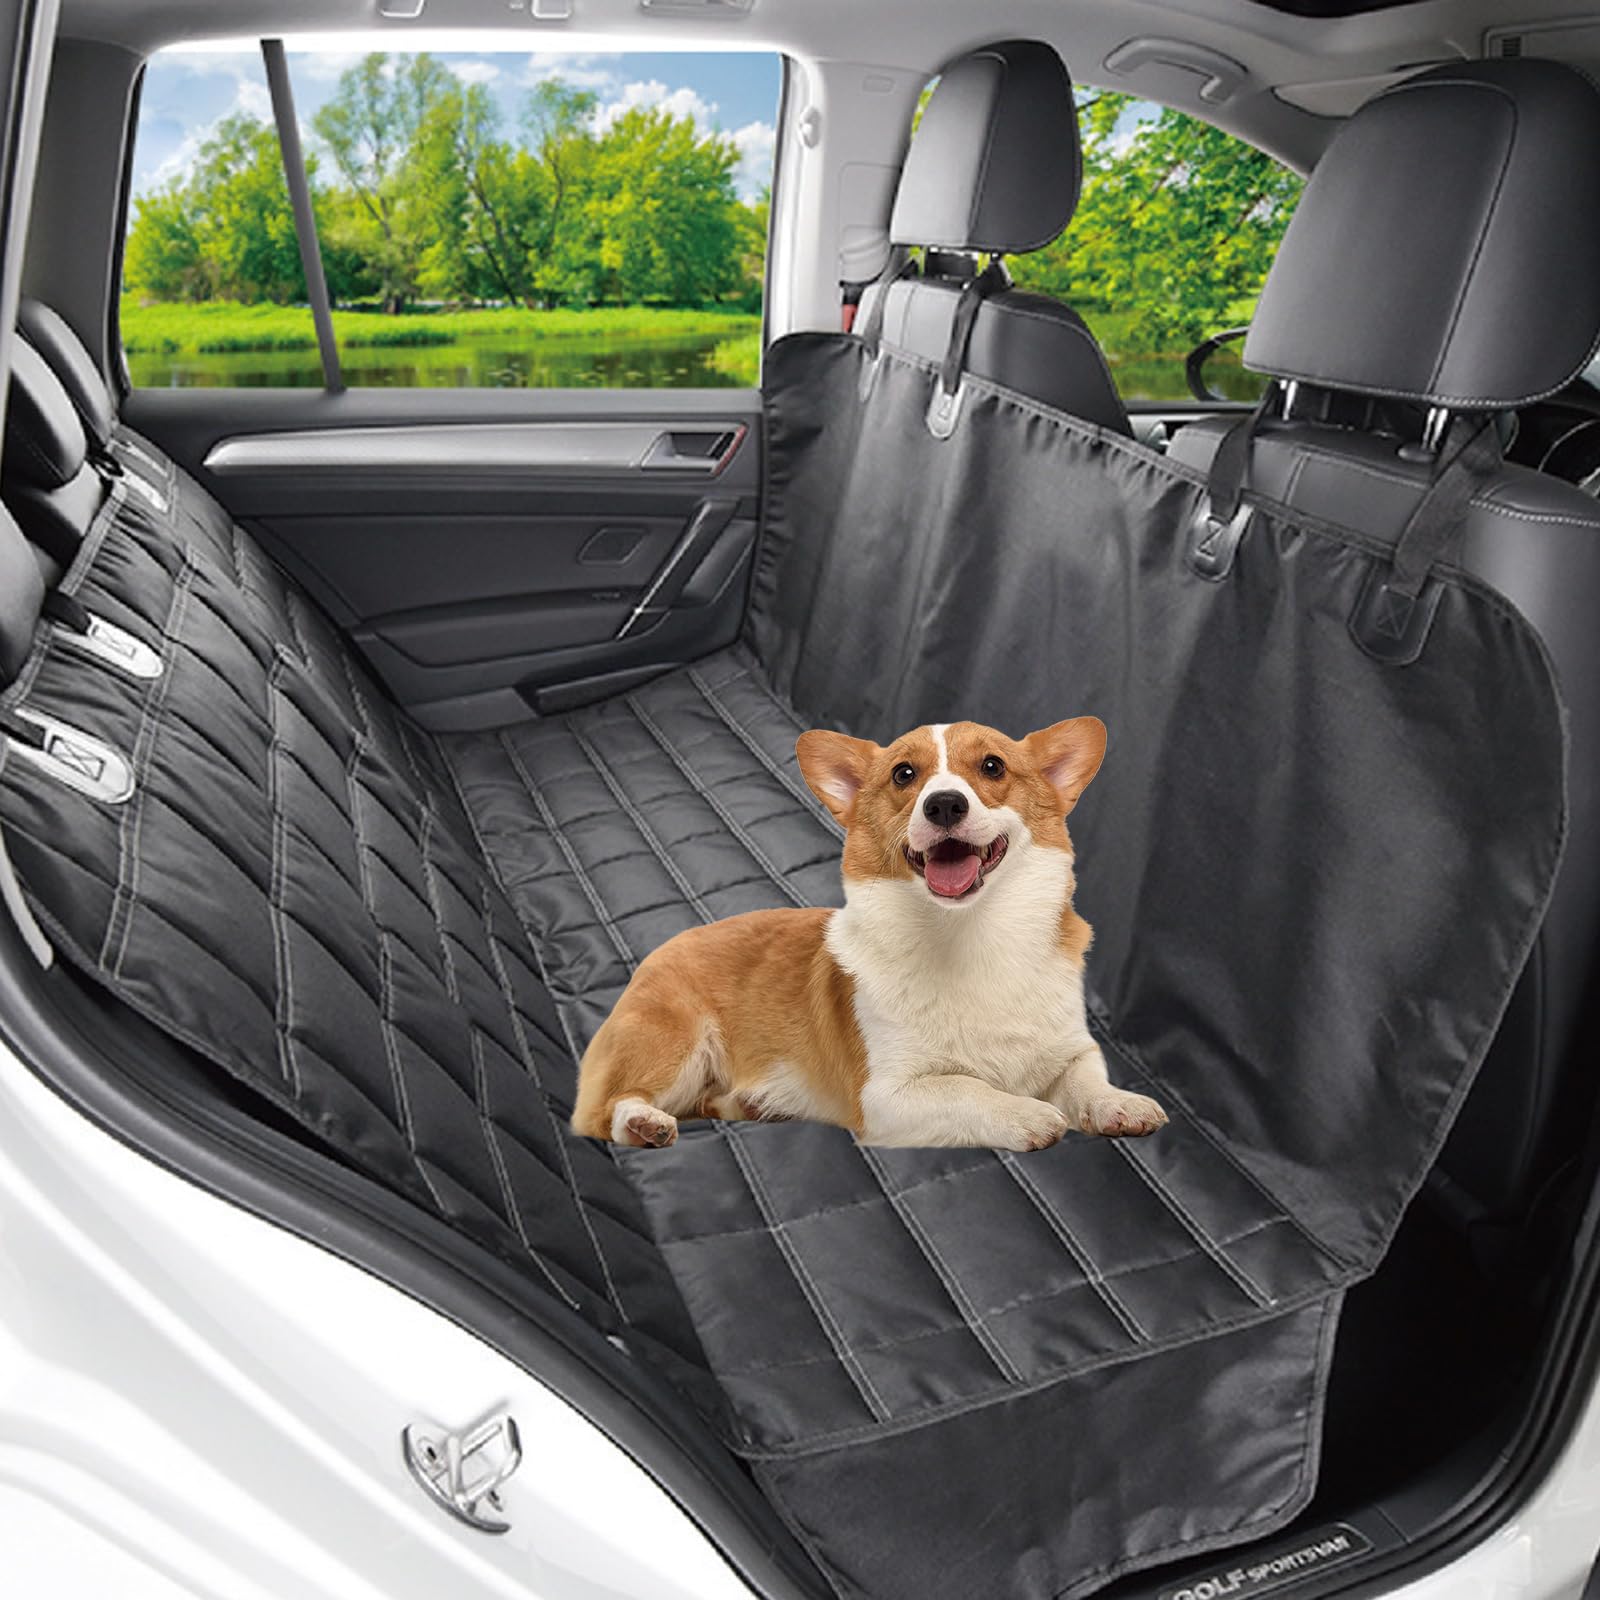 MLQLCKYH Kofferraum, Autositzbezug für Hunde, Hängematte für die Rückbank des Autos, Autohängematte für Hunde, kratzfester Autositzbezug, Rücksitzbezug für Hunde, geeignet für SUVs, Autos (Rücksitz) von MLQLCKYH